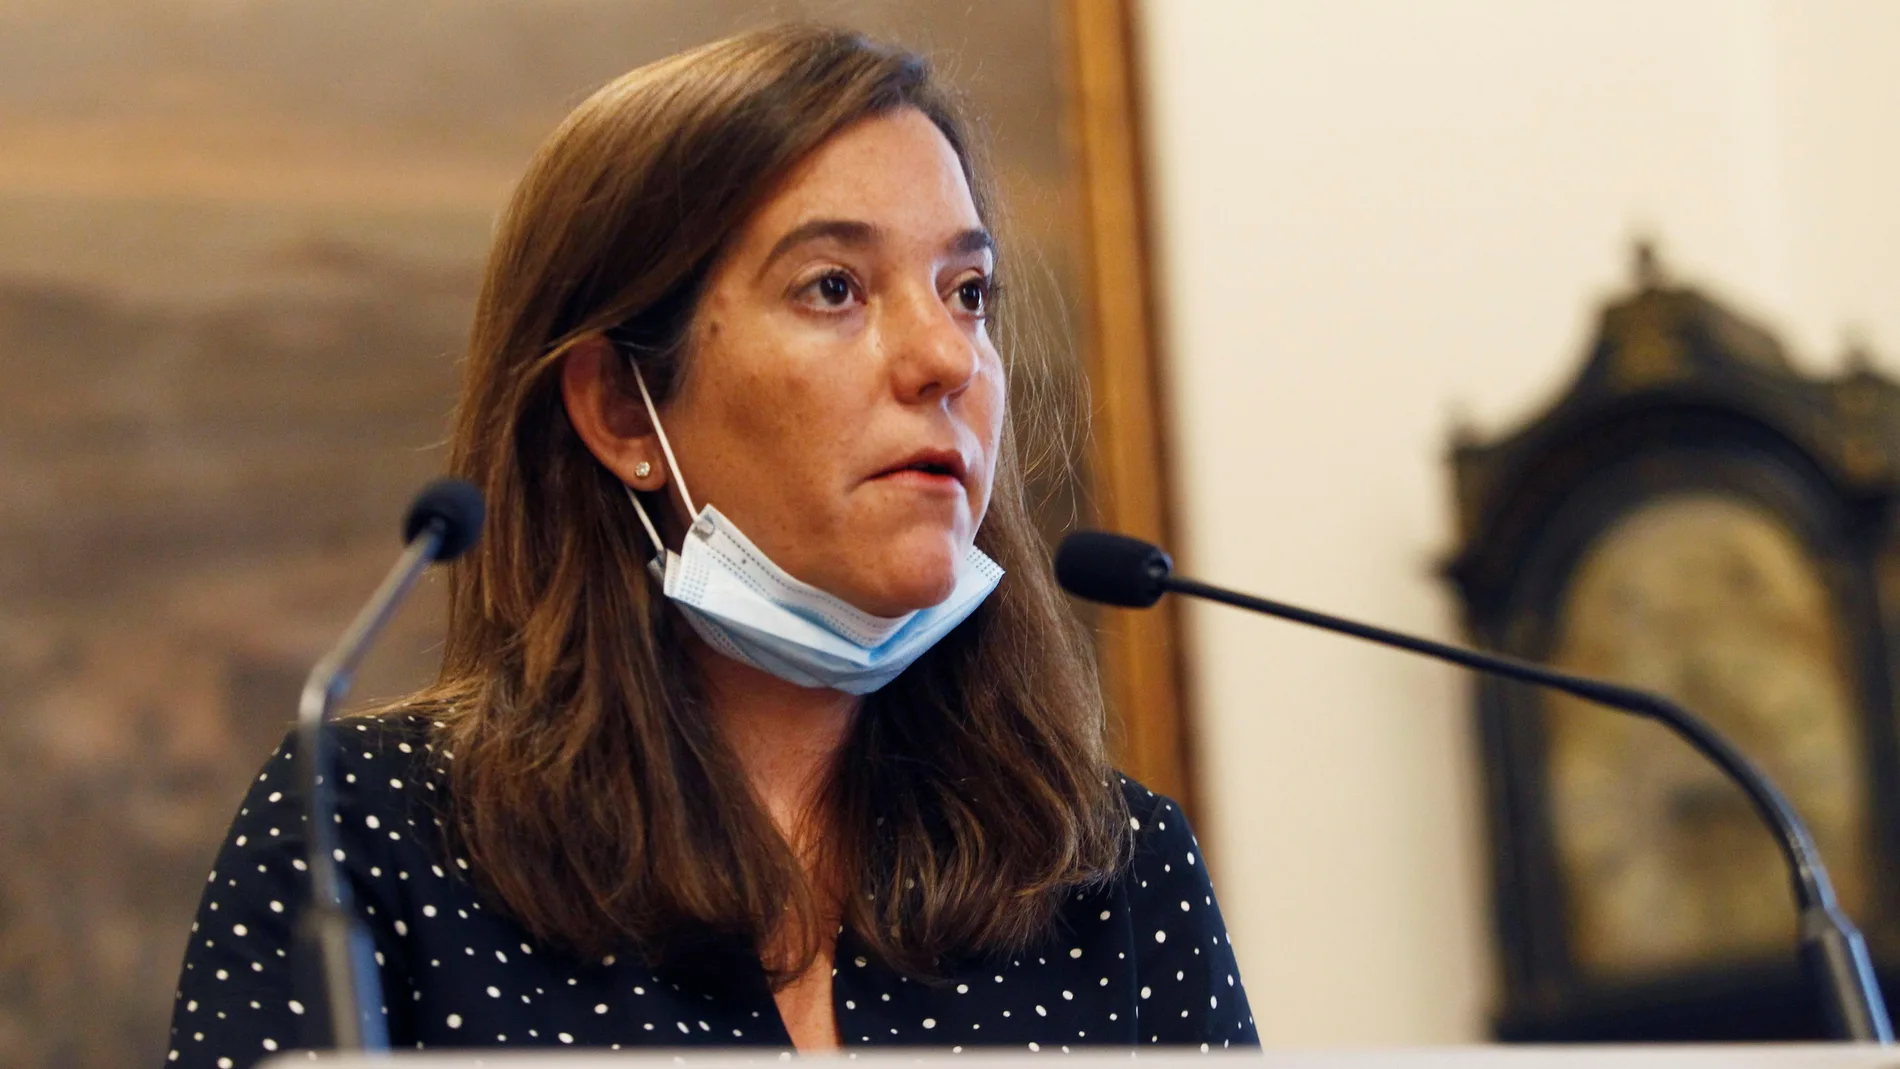 La alcaldesa de A Coruña, Inés Rey ha expresado su "absoluta indignación" por el "irresponsable" viaje del Fuenlabrada con casos de covid-19